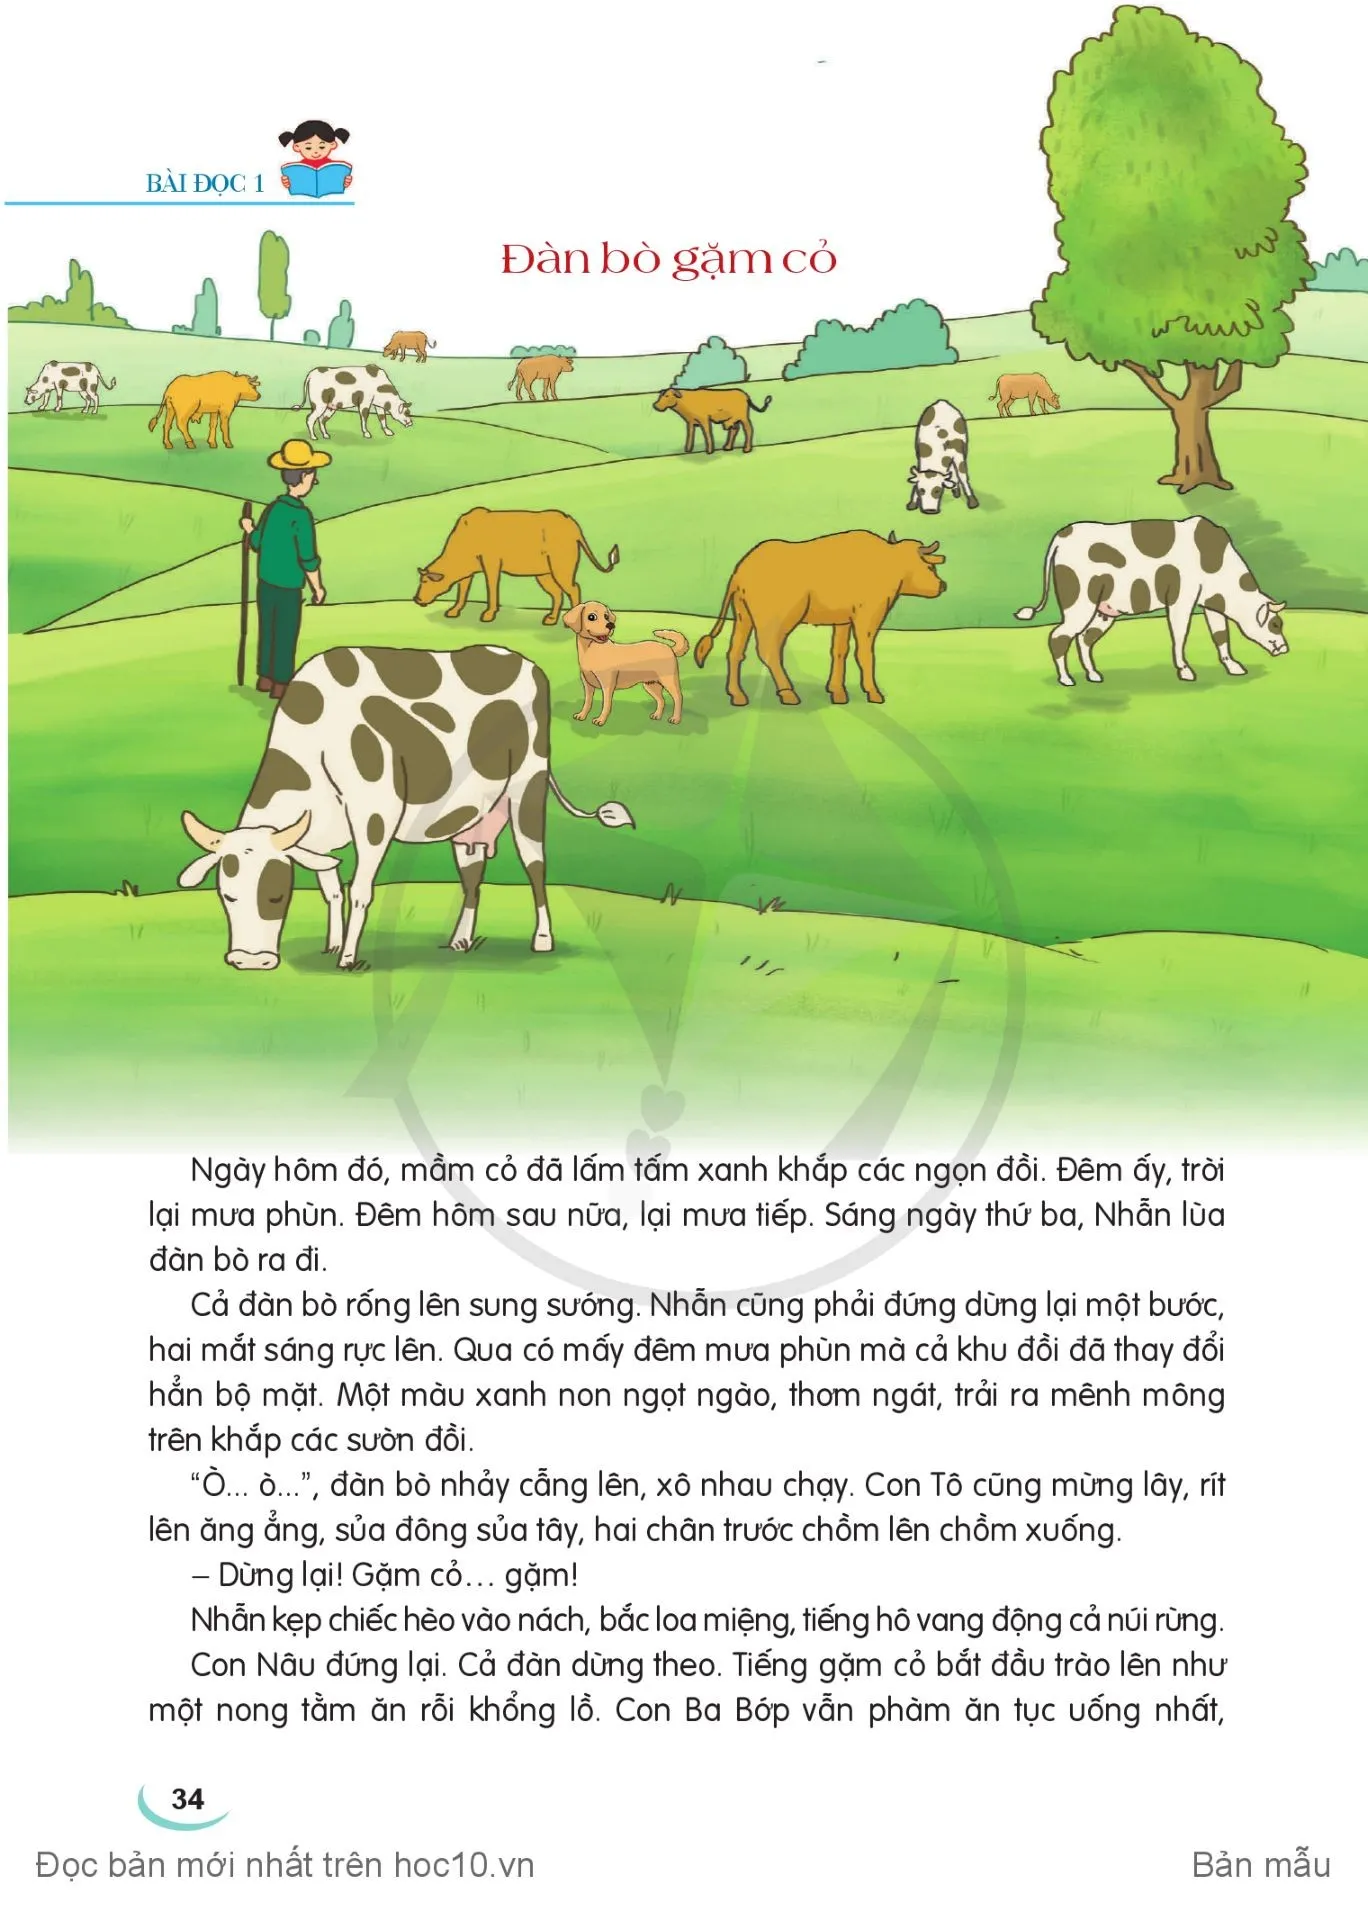 Chia sẻ và đọc: Đàn bò gặm cỏ